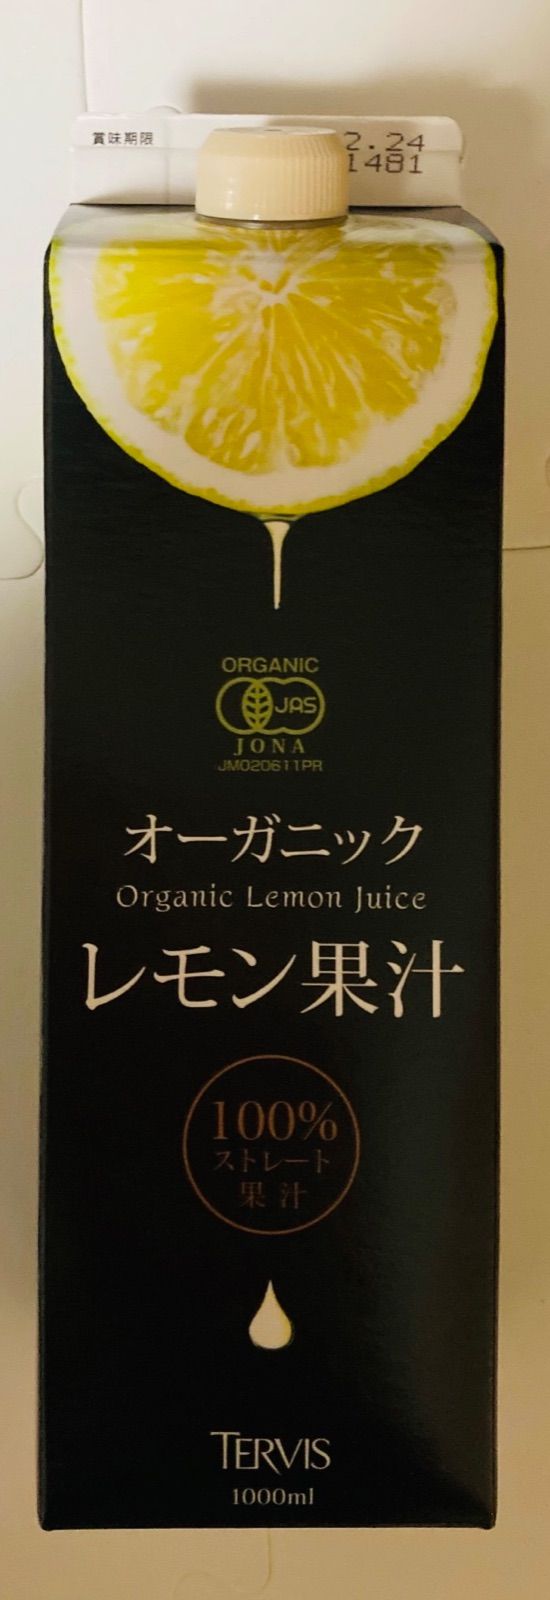 テルヴィス 有機レモン果汁300ml 3本 オーガニック